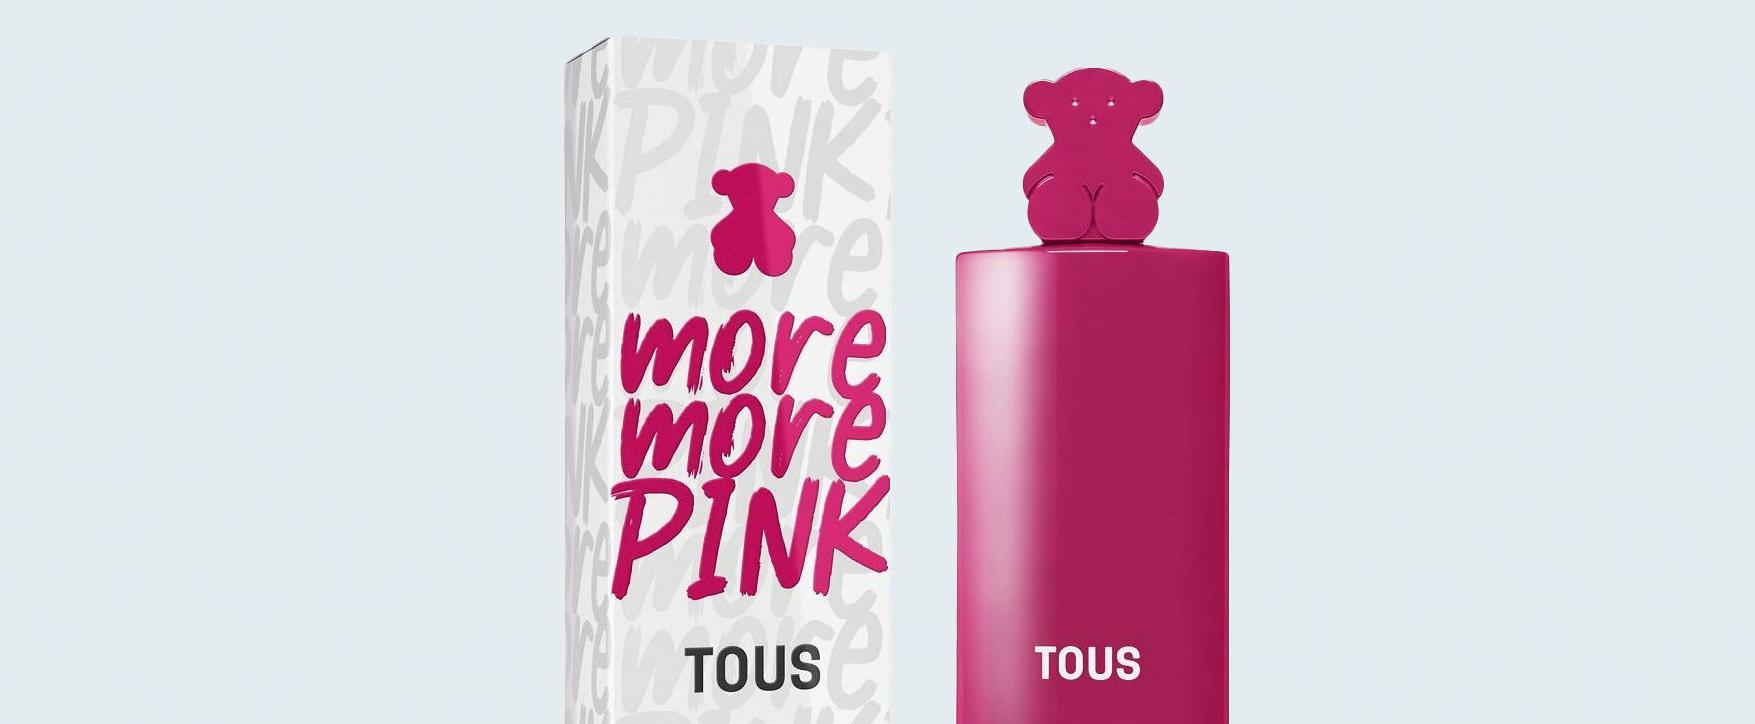 Rosa, frisch und feminin: Der neue Duft „More More Pink“ von Tous﻿